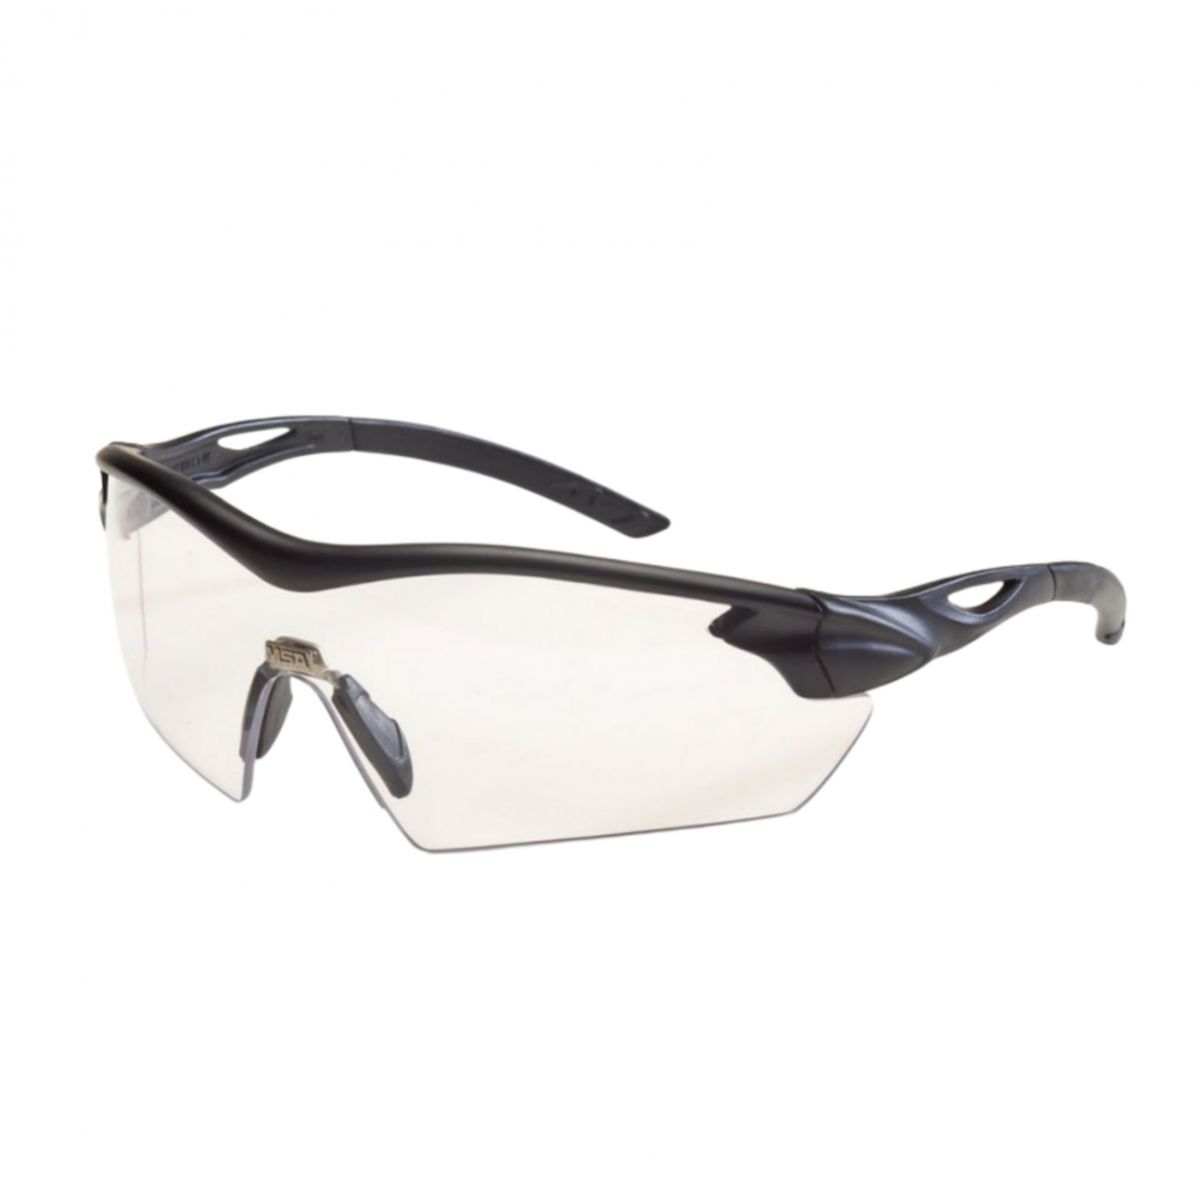 Тактические очки MSA Sordin Racers с покрытием Sightgard. Одинарная линза. Прозрачные